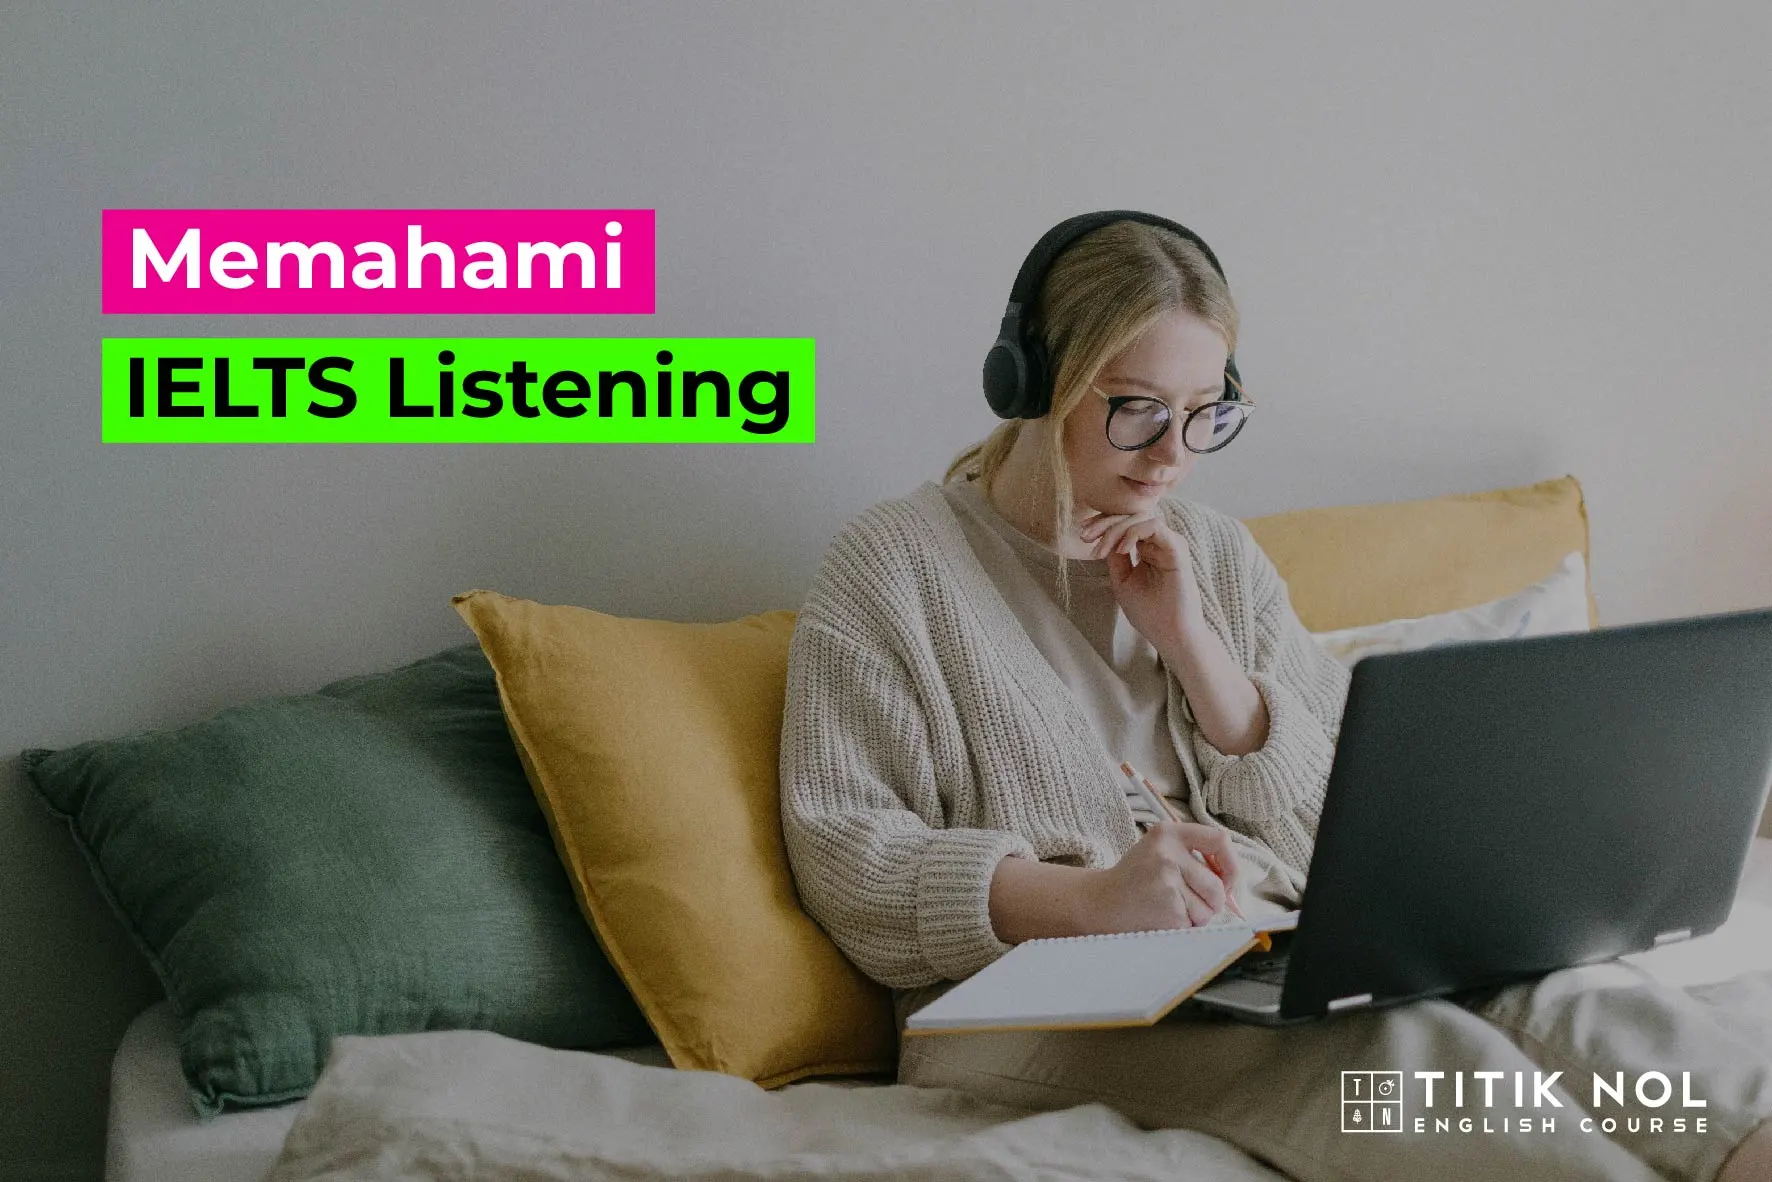 Memahami IELTS Listening